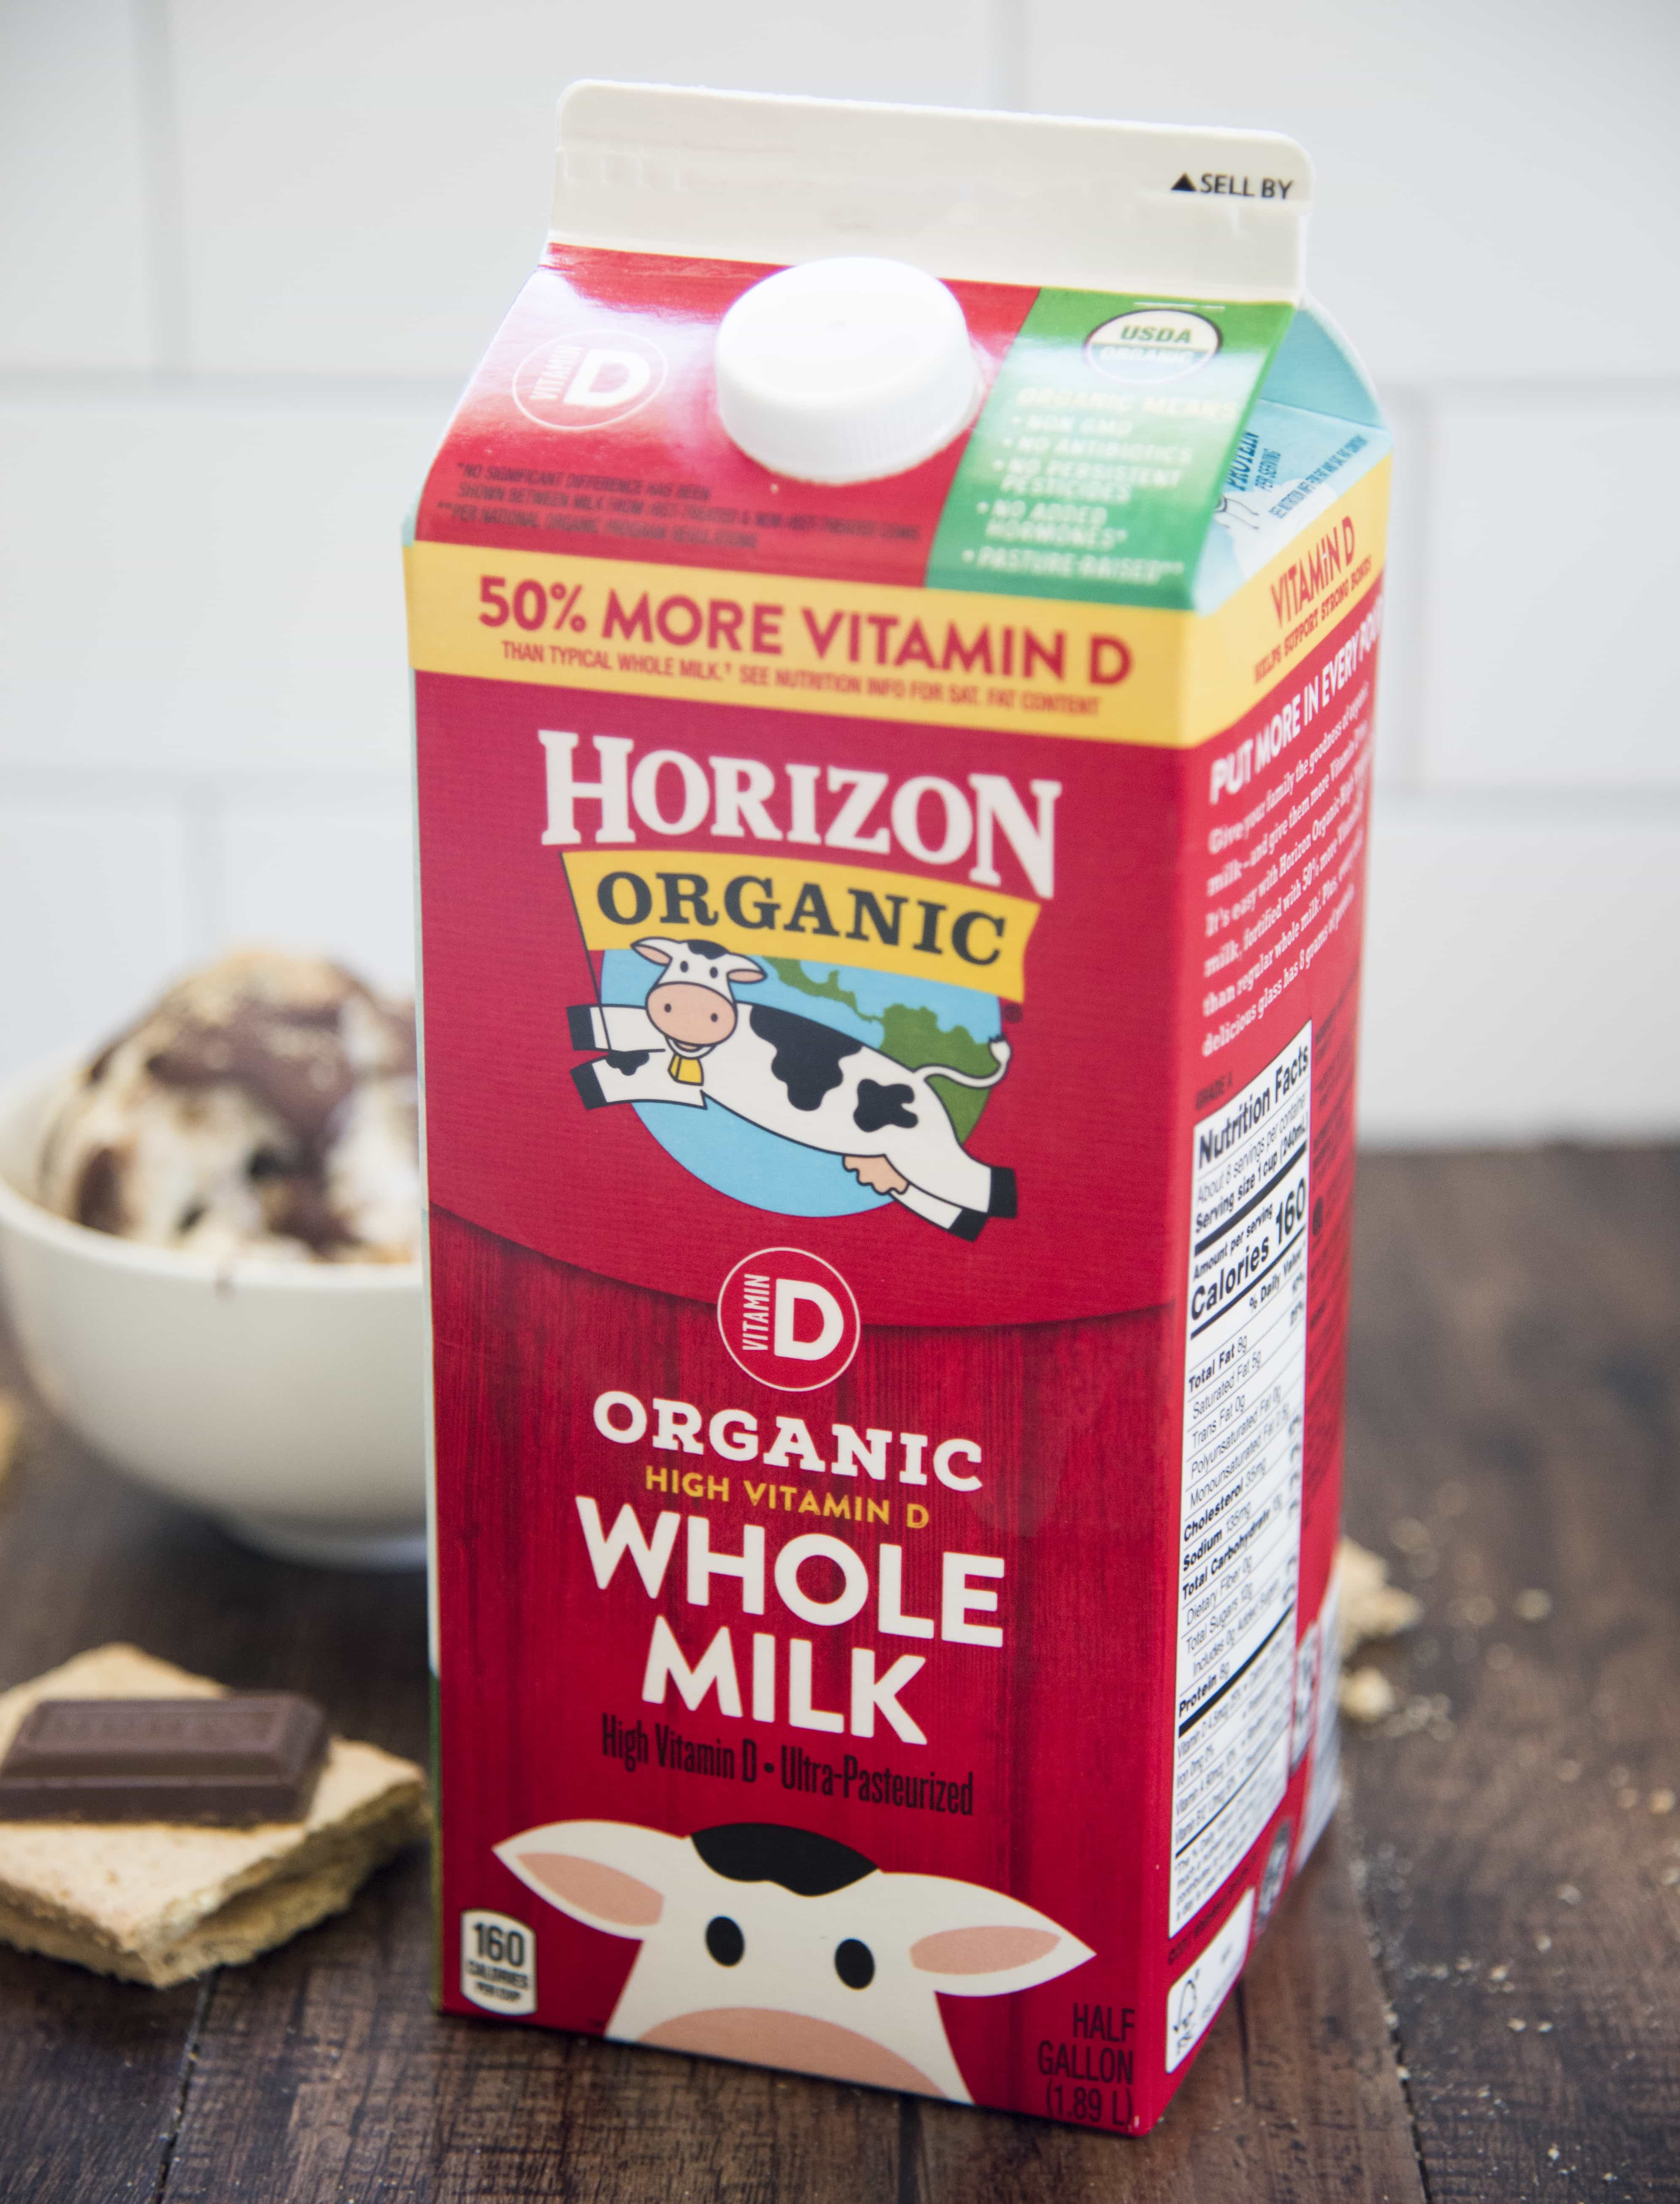 A carton of Horizon Organic Whole Milk.